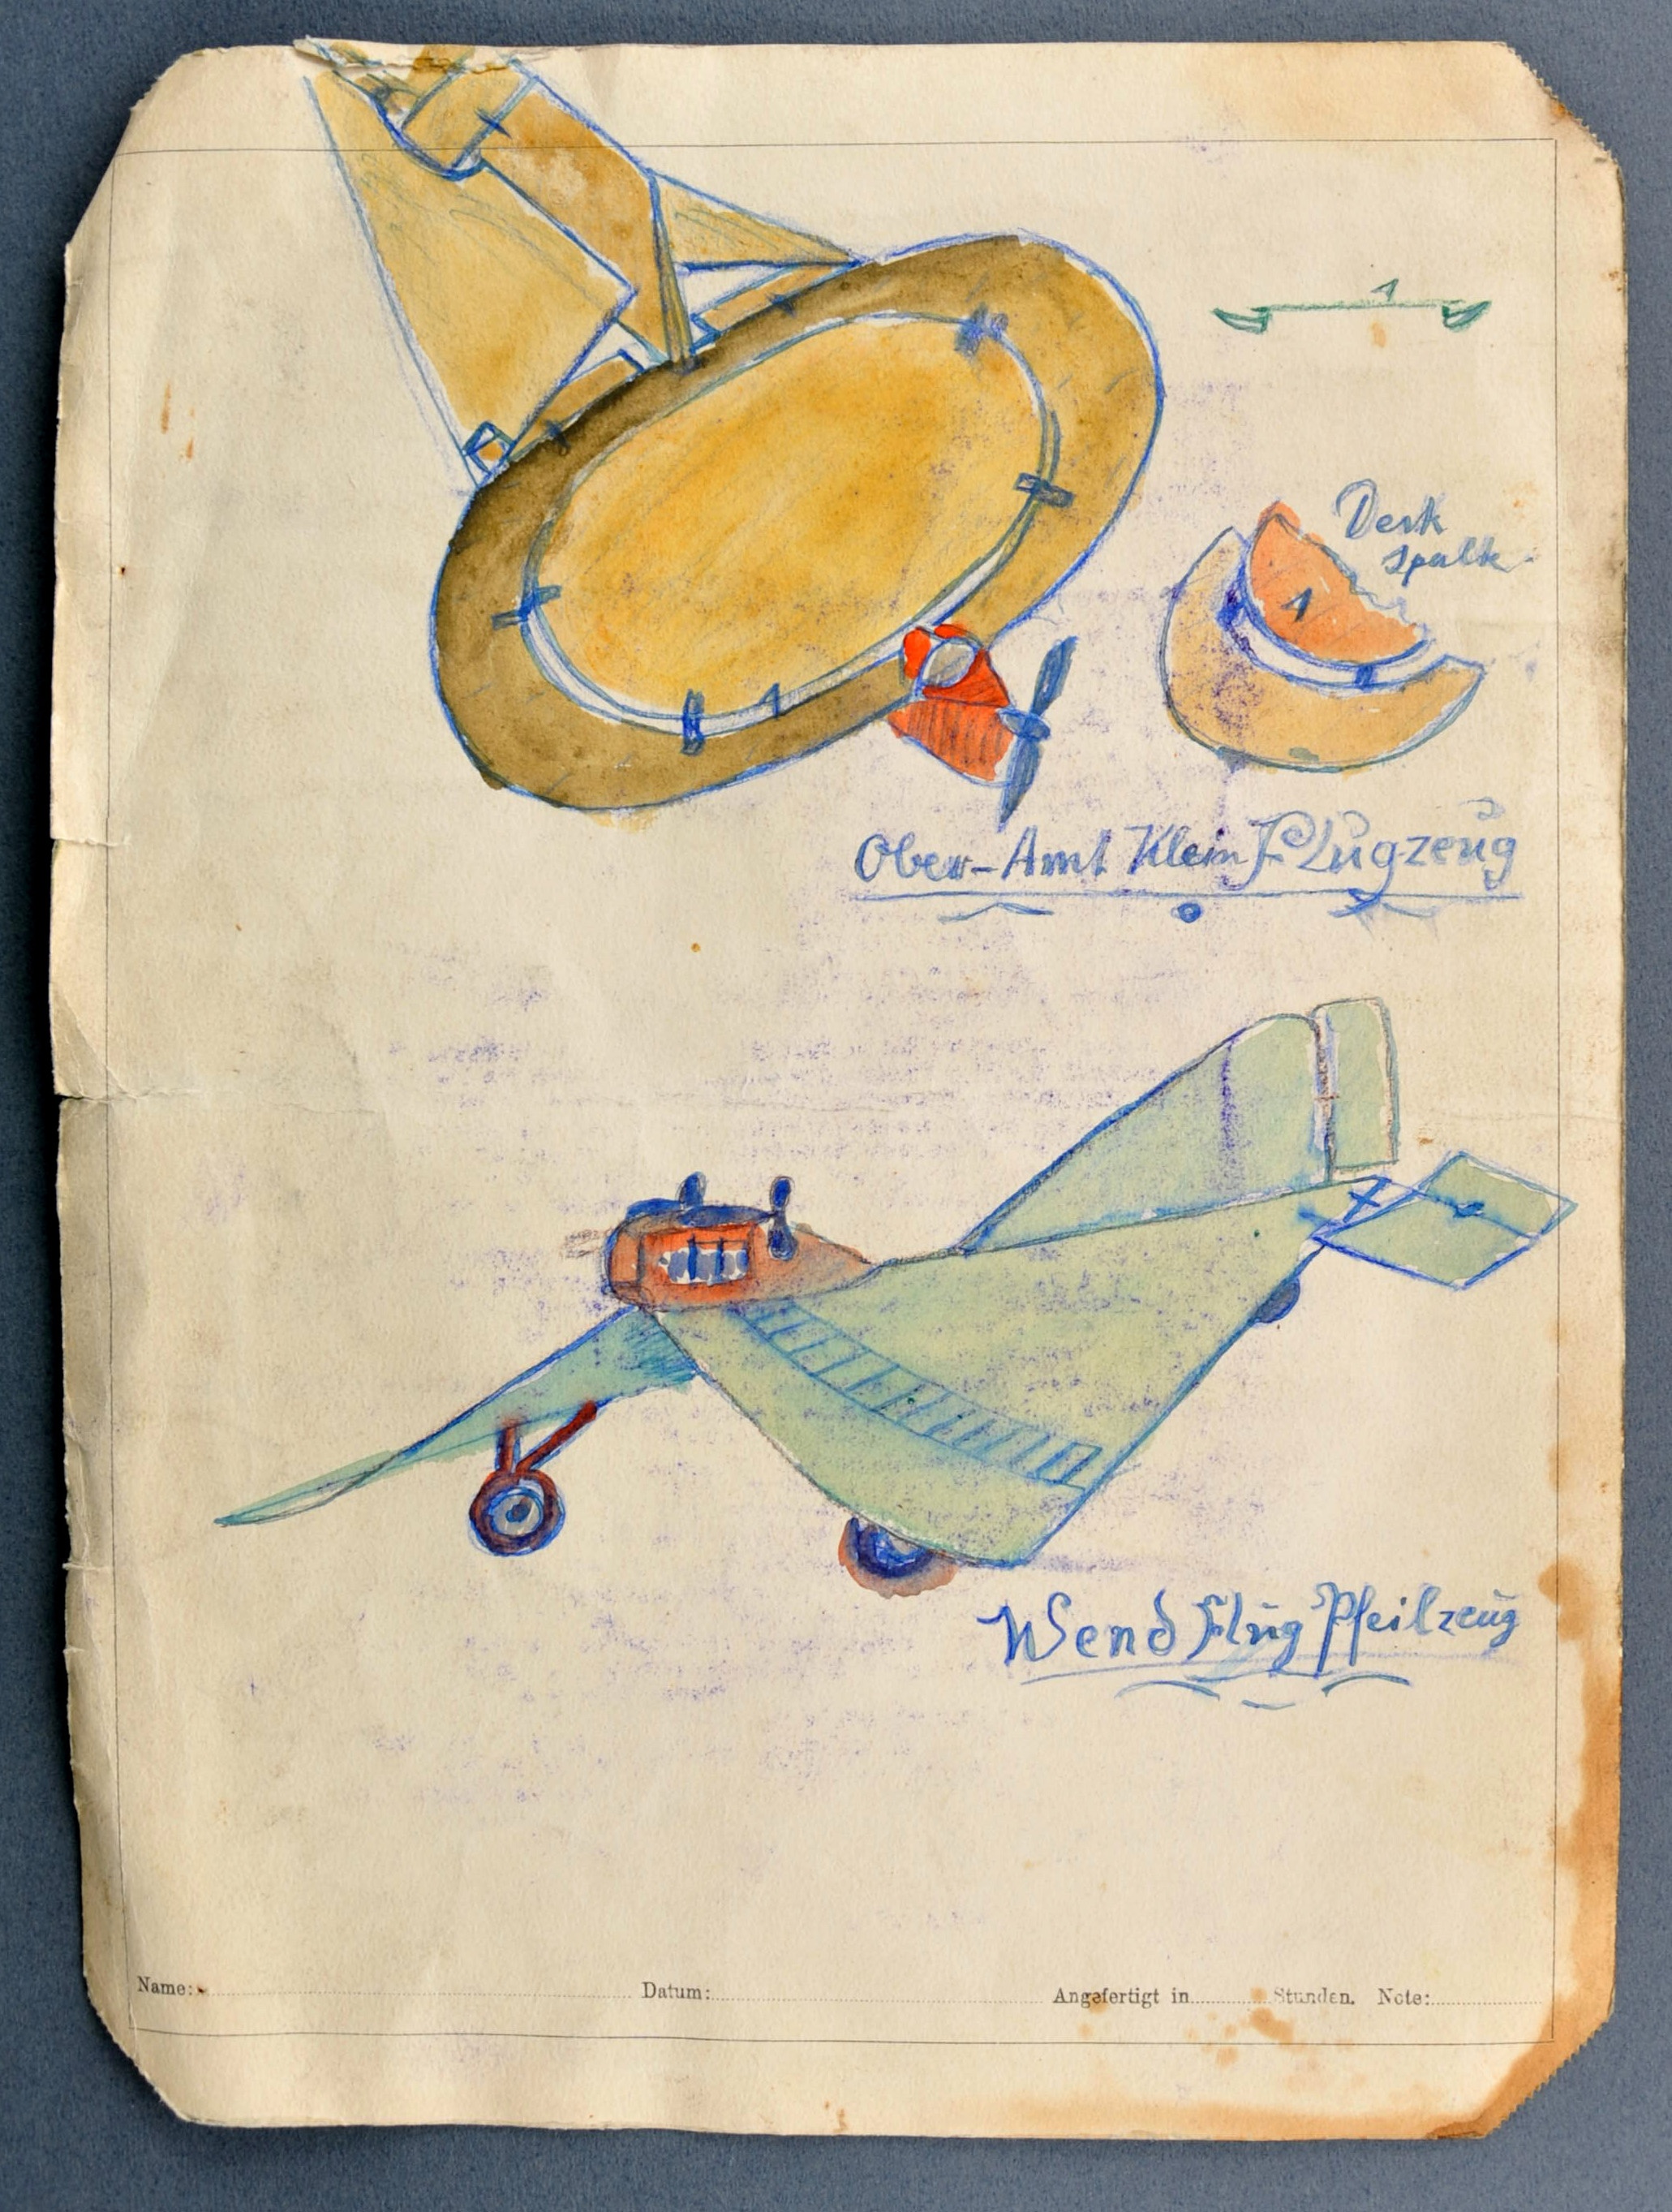 "Ober-Amt Klein Flugzeug" ; "Wend Flug Pfeilzeug" ; "Fuss-Schwinge" ; "Schraub-Roller" (Gustav Mesmer Stiftung CC BY-NC-SA)